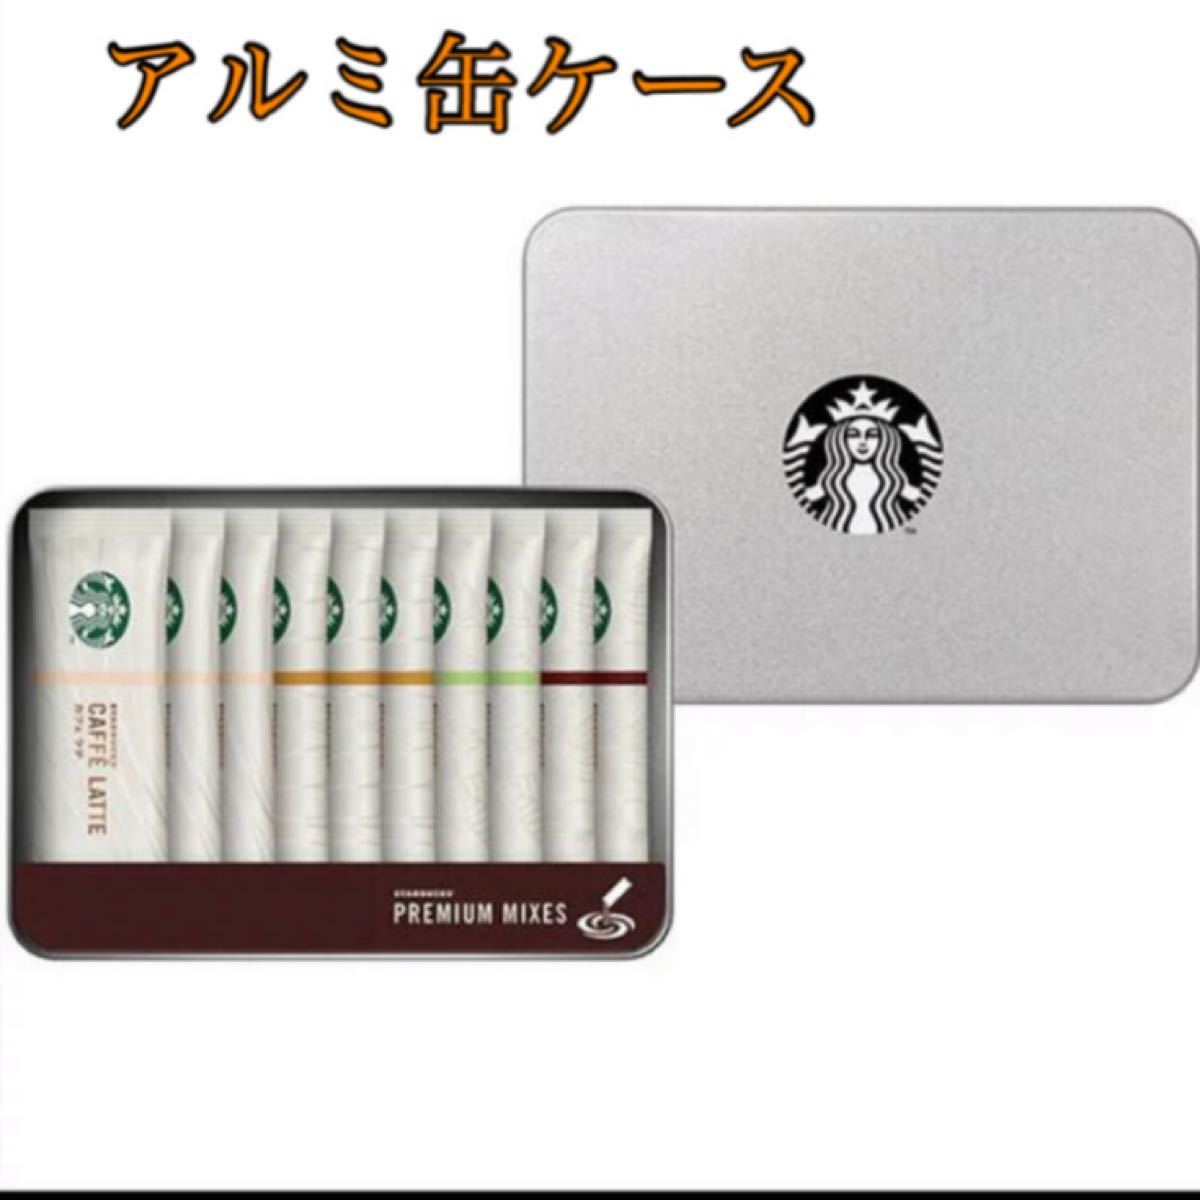 スターバックス　プレミアムミックスギフト Starbucks 【アルミ缶ケース】